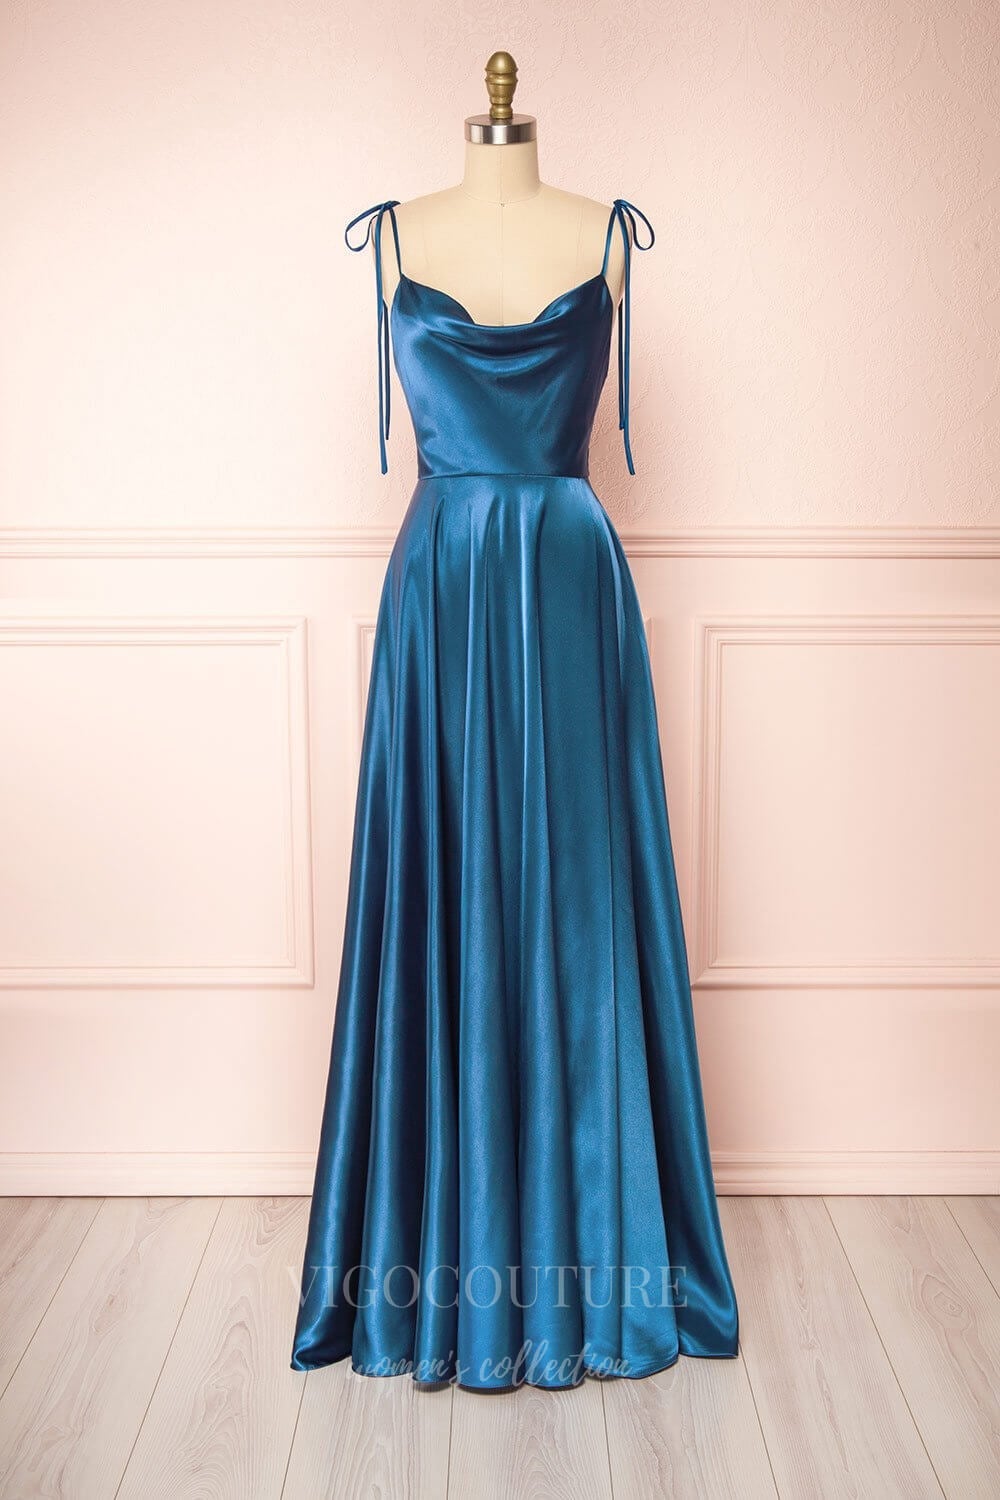 vigocouture-Sage Spaghetti Strap Prom Dress 20580-Prom Dresses-vigocouture-Blue-US2-